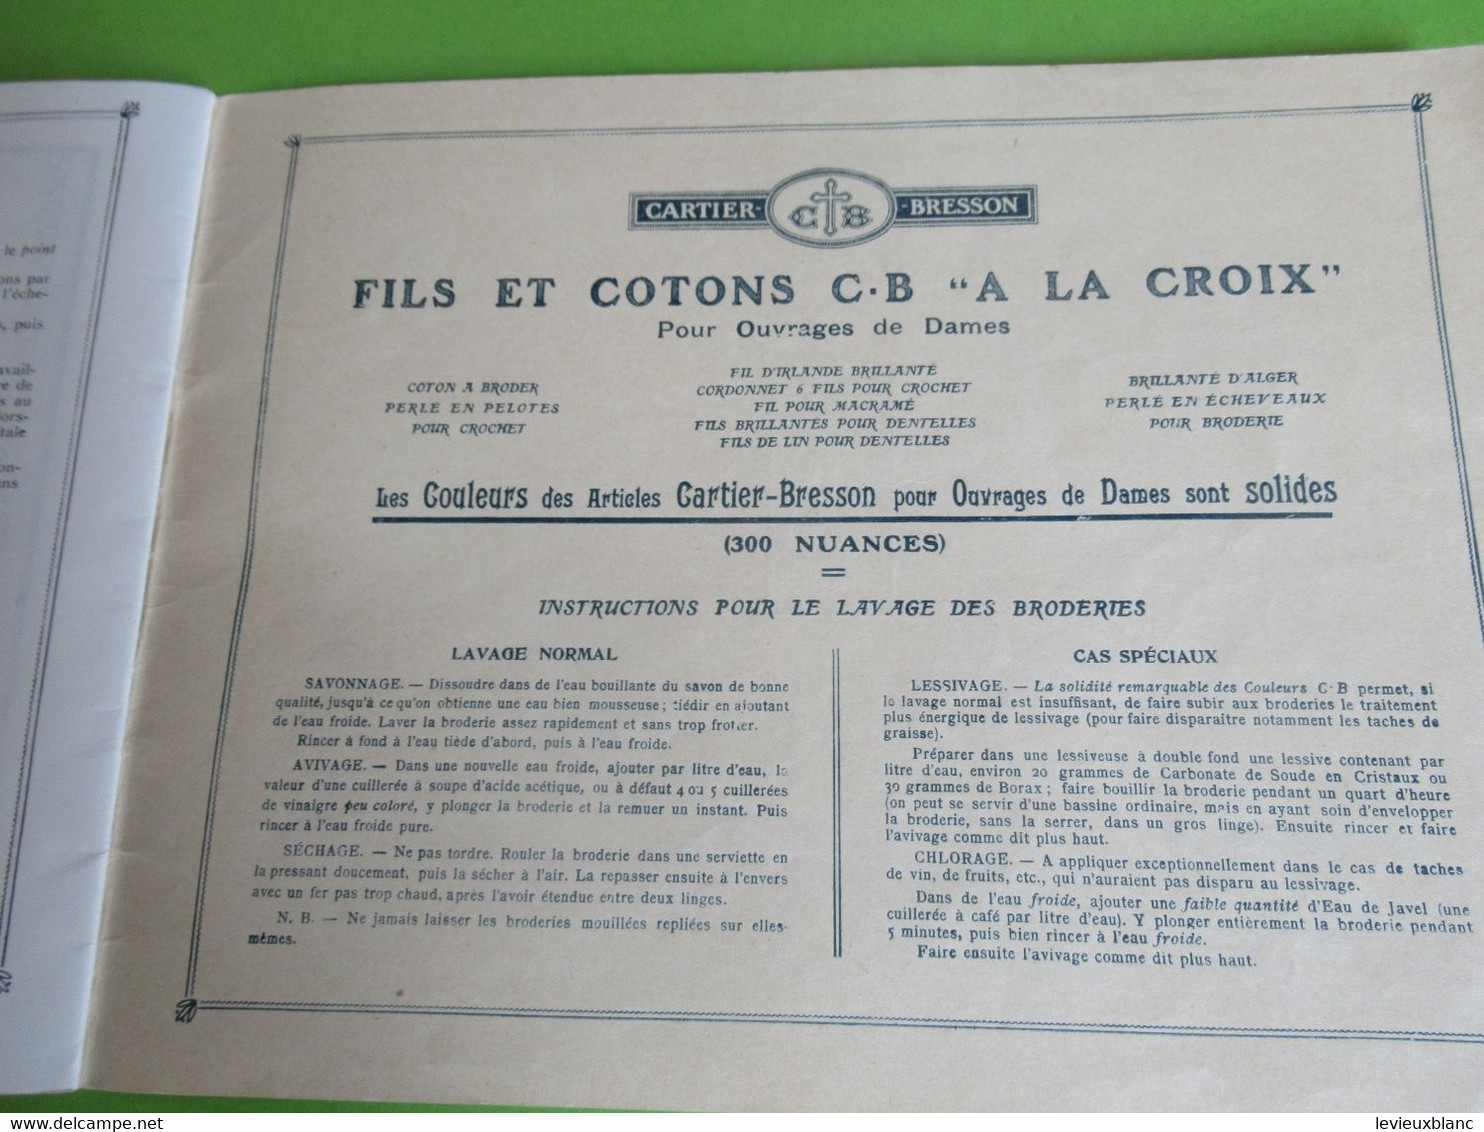 Catalogue/ Les Jours Modernes à Fils Tirés/Collection JS/Album N°2/ CB à La Croix/Vers 1920-1930                   MER73 - Laces & Cloth